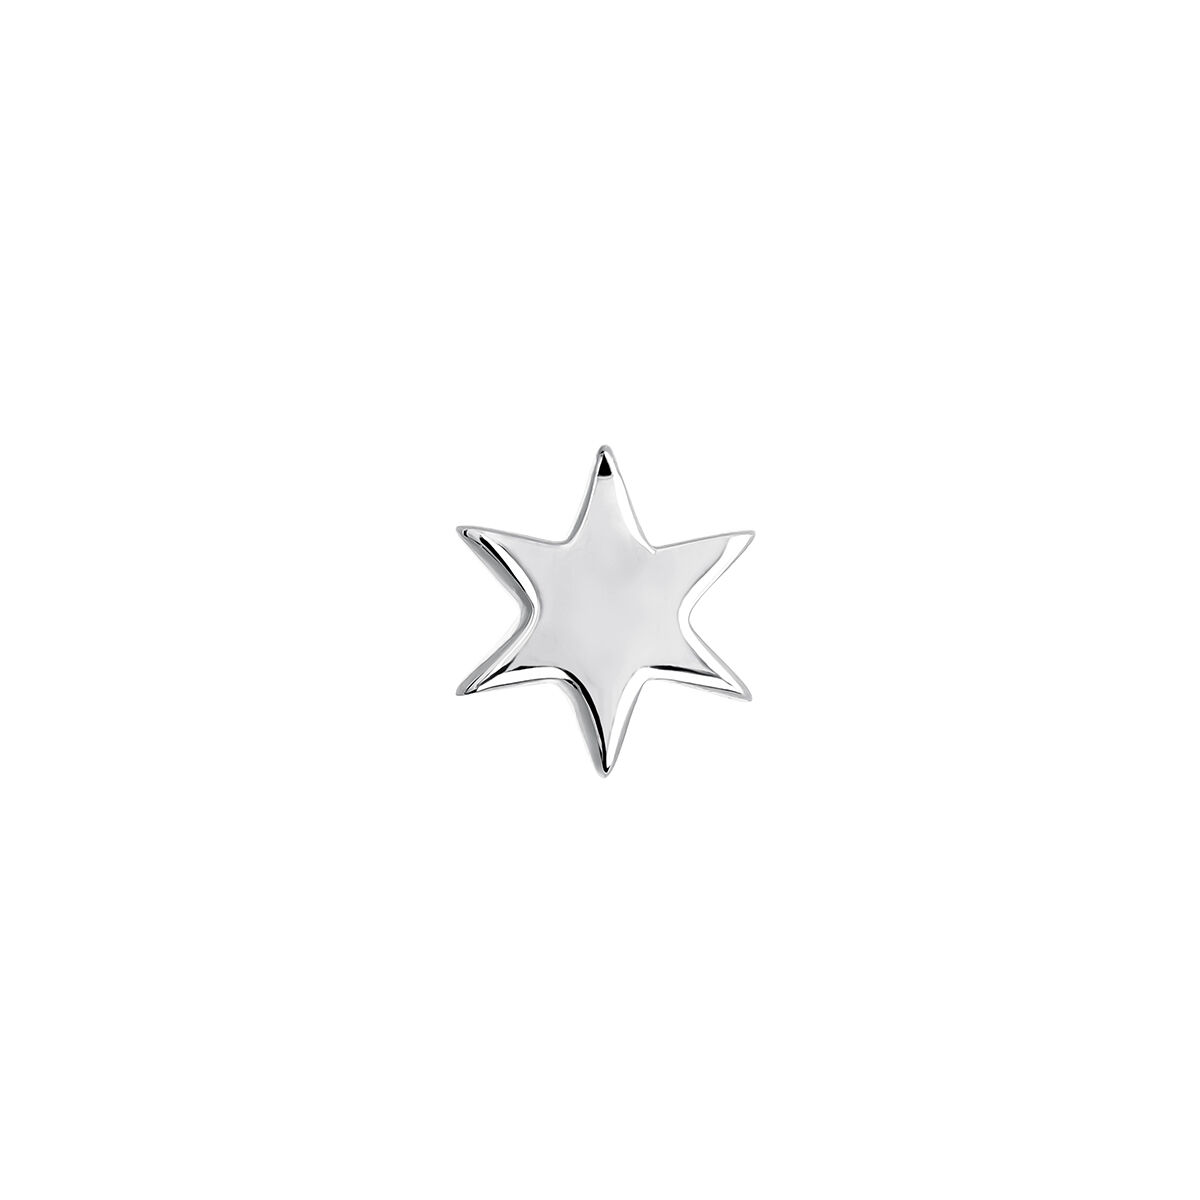 Star earring in 18k white gold, J03834-01-H-18, hi-res